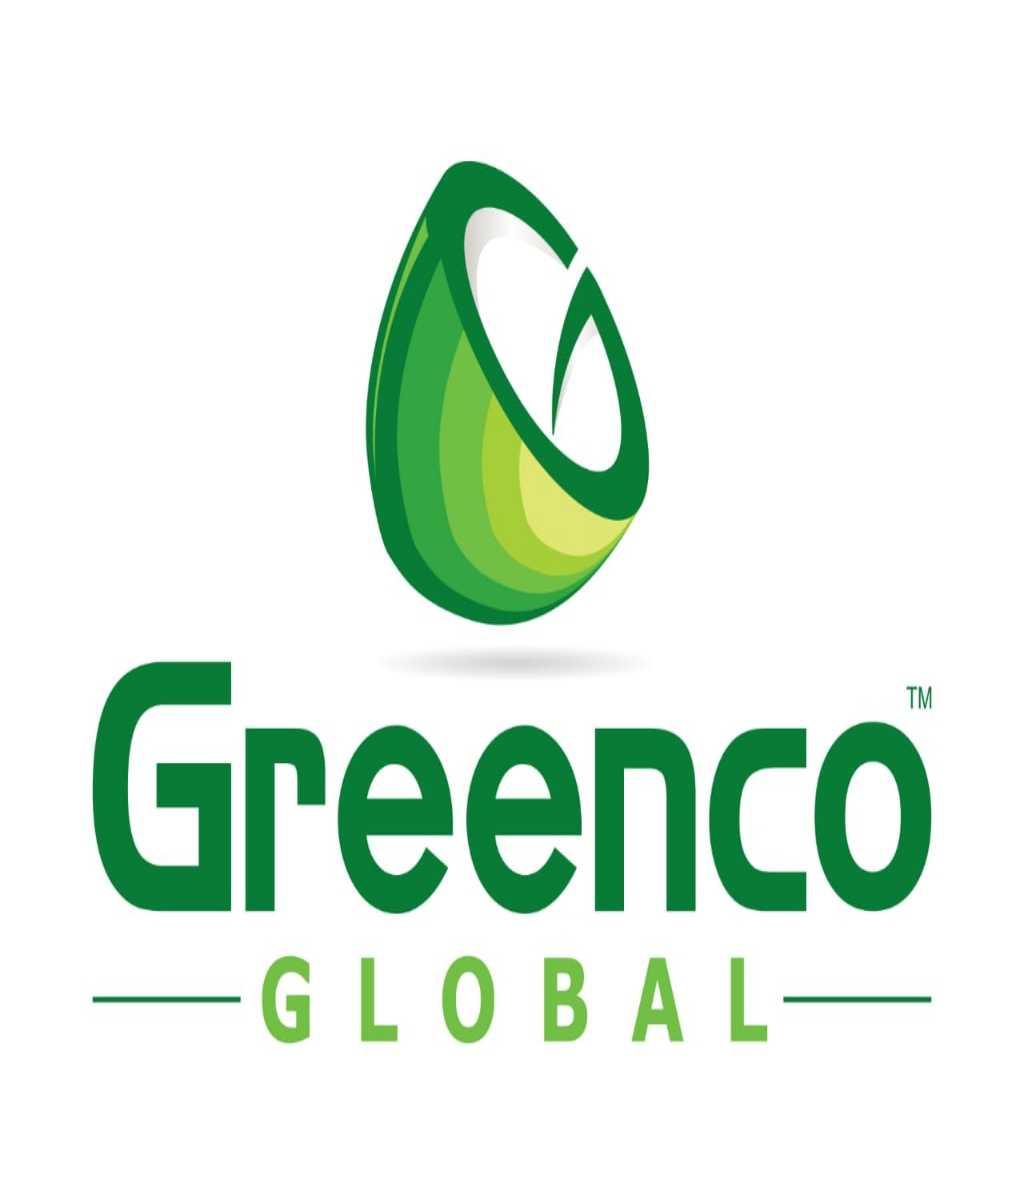 Greenco Global